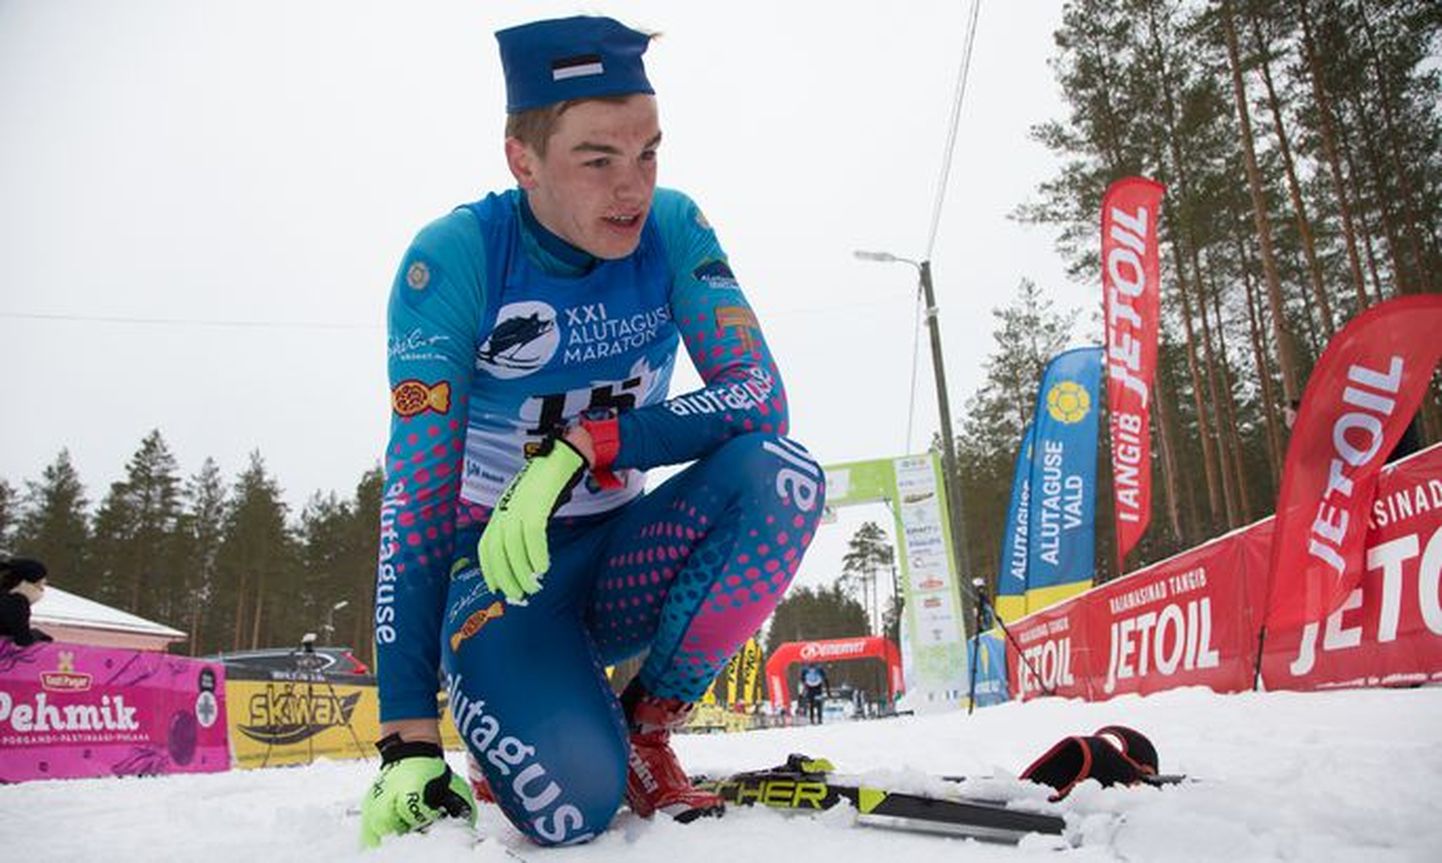 Успешные выступления на Алутагузеском и Хааньяском марафонах обеспечили Каспару Краувярку первое место в серии "Estoloppet" в возрастном классе U20.